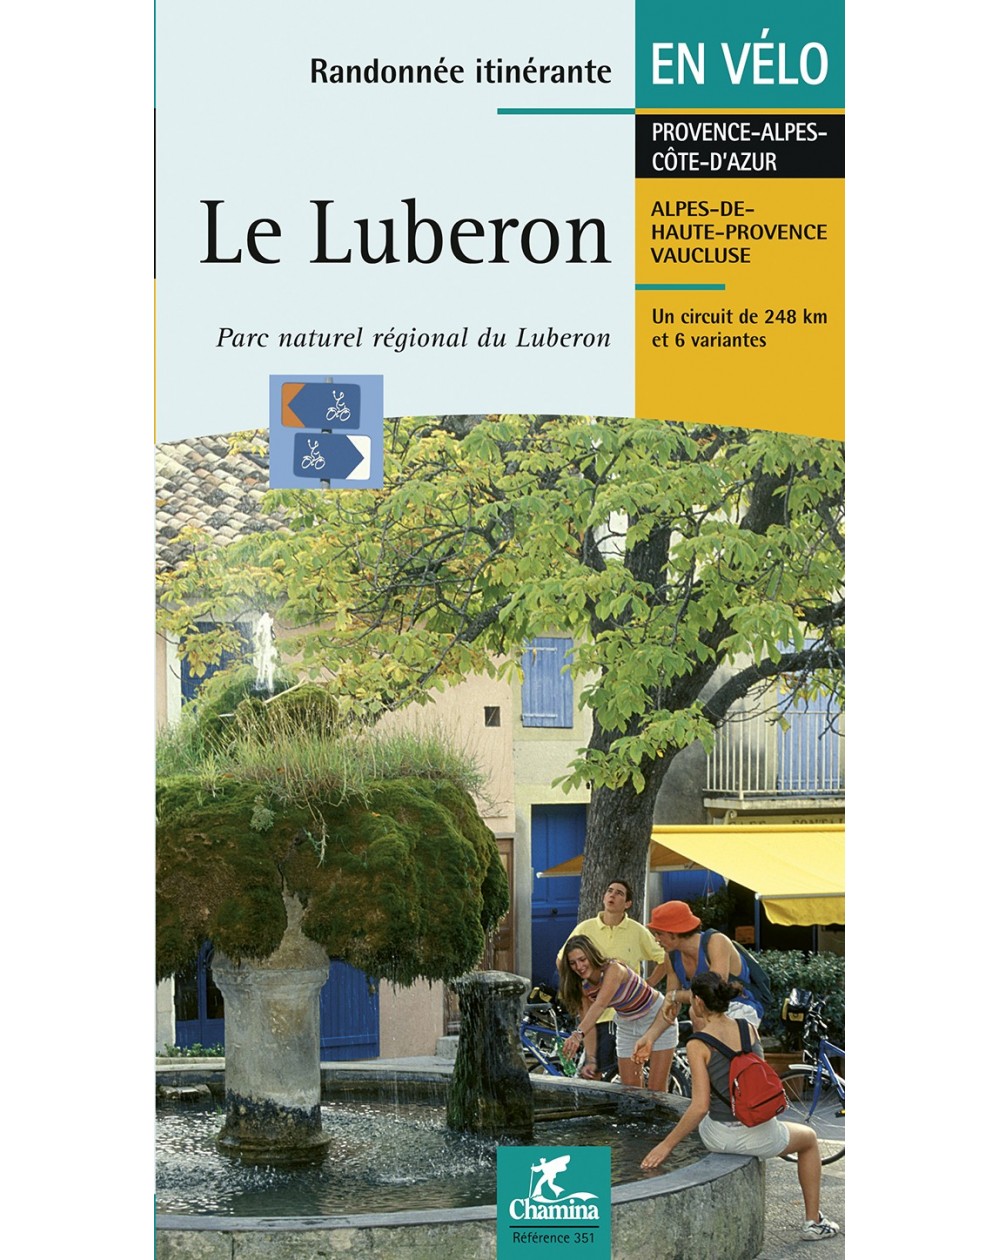 luberon-en-velo-chamina-edition-9782844660909